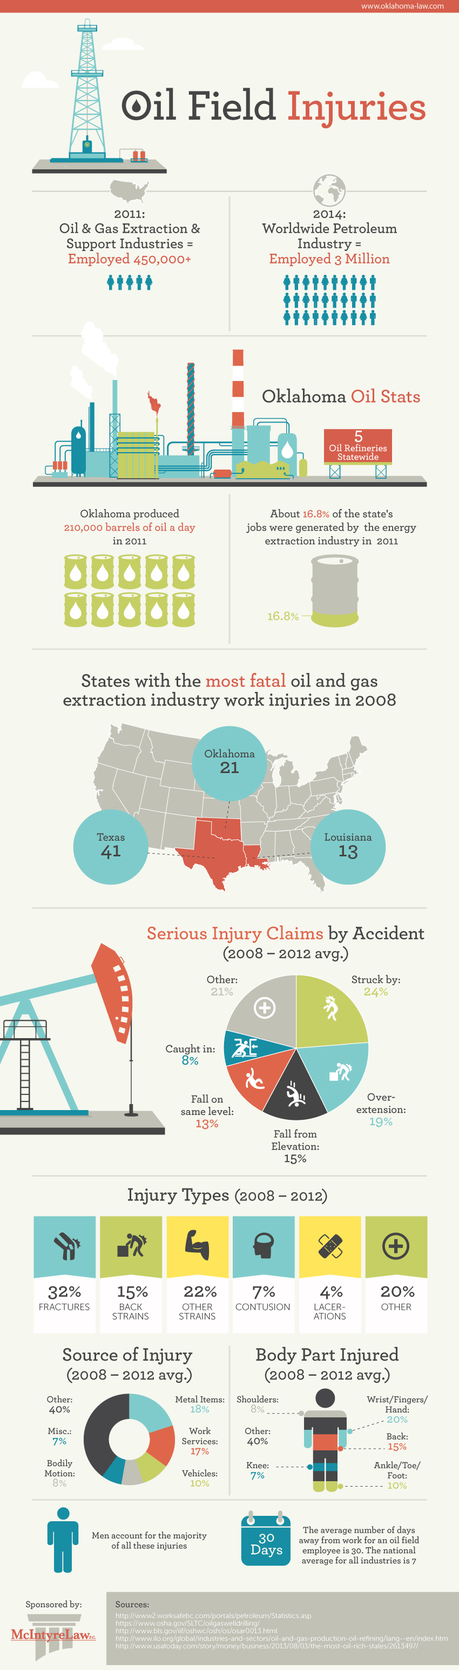 U.S. Oil Field Injuries Statistics